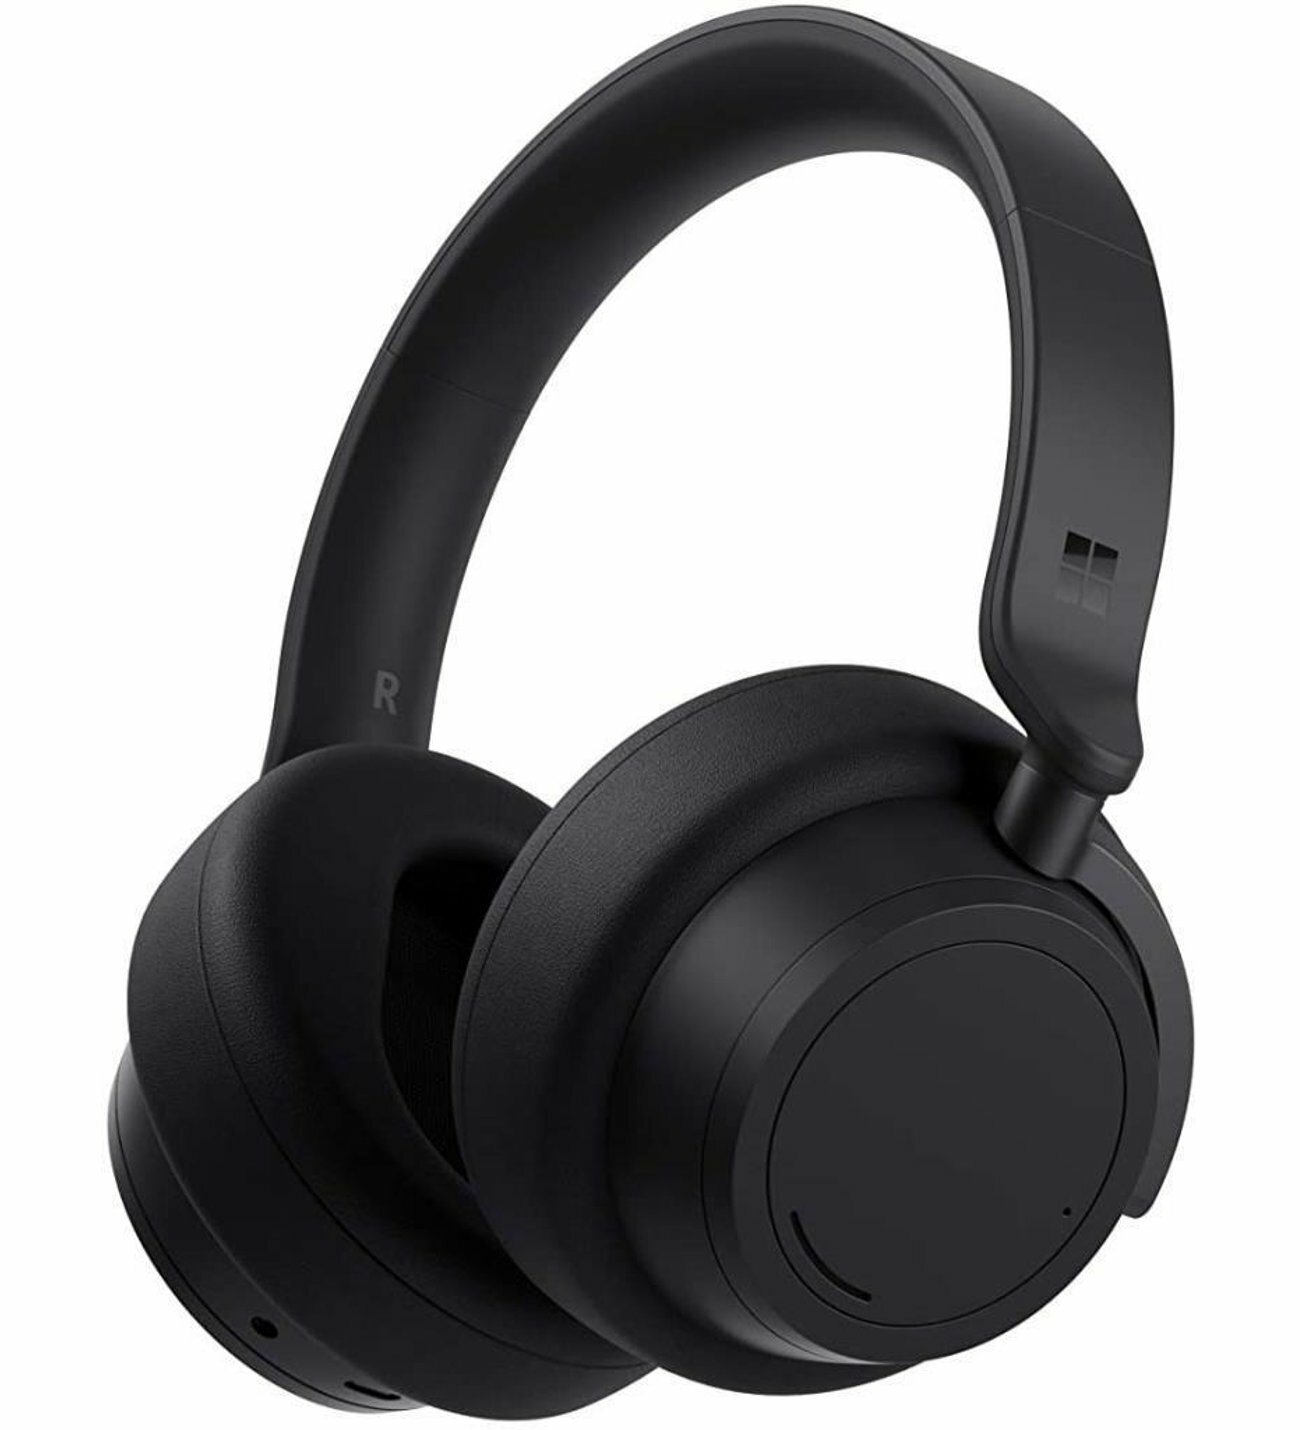 Беспроводные наушники Microsoft Surface Headphones 2, USB Type-C, matte black